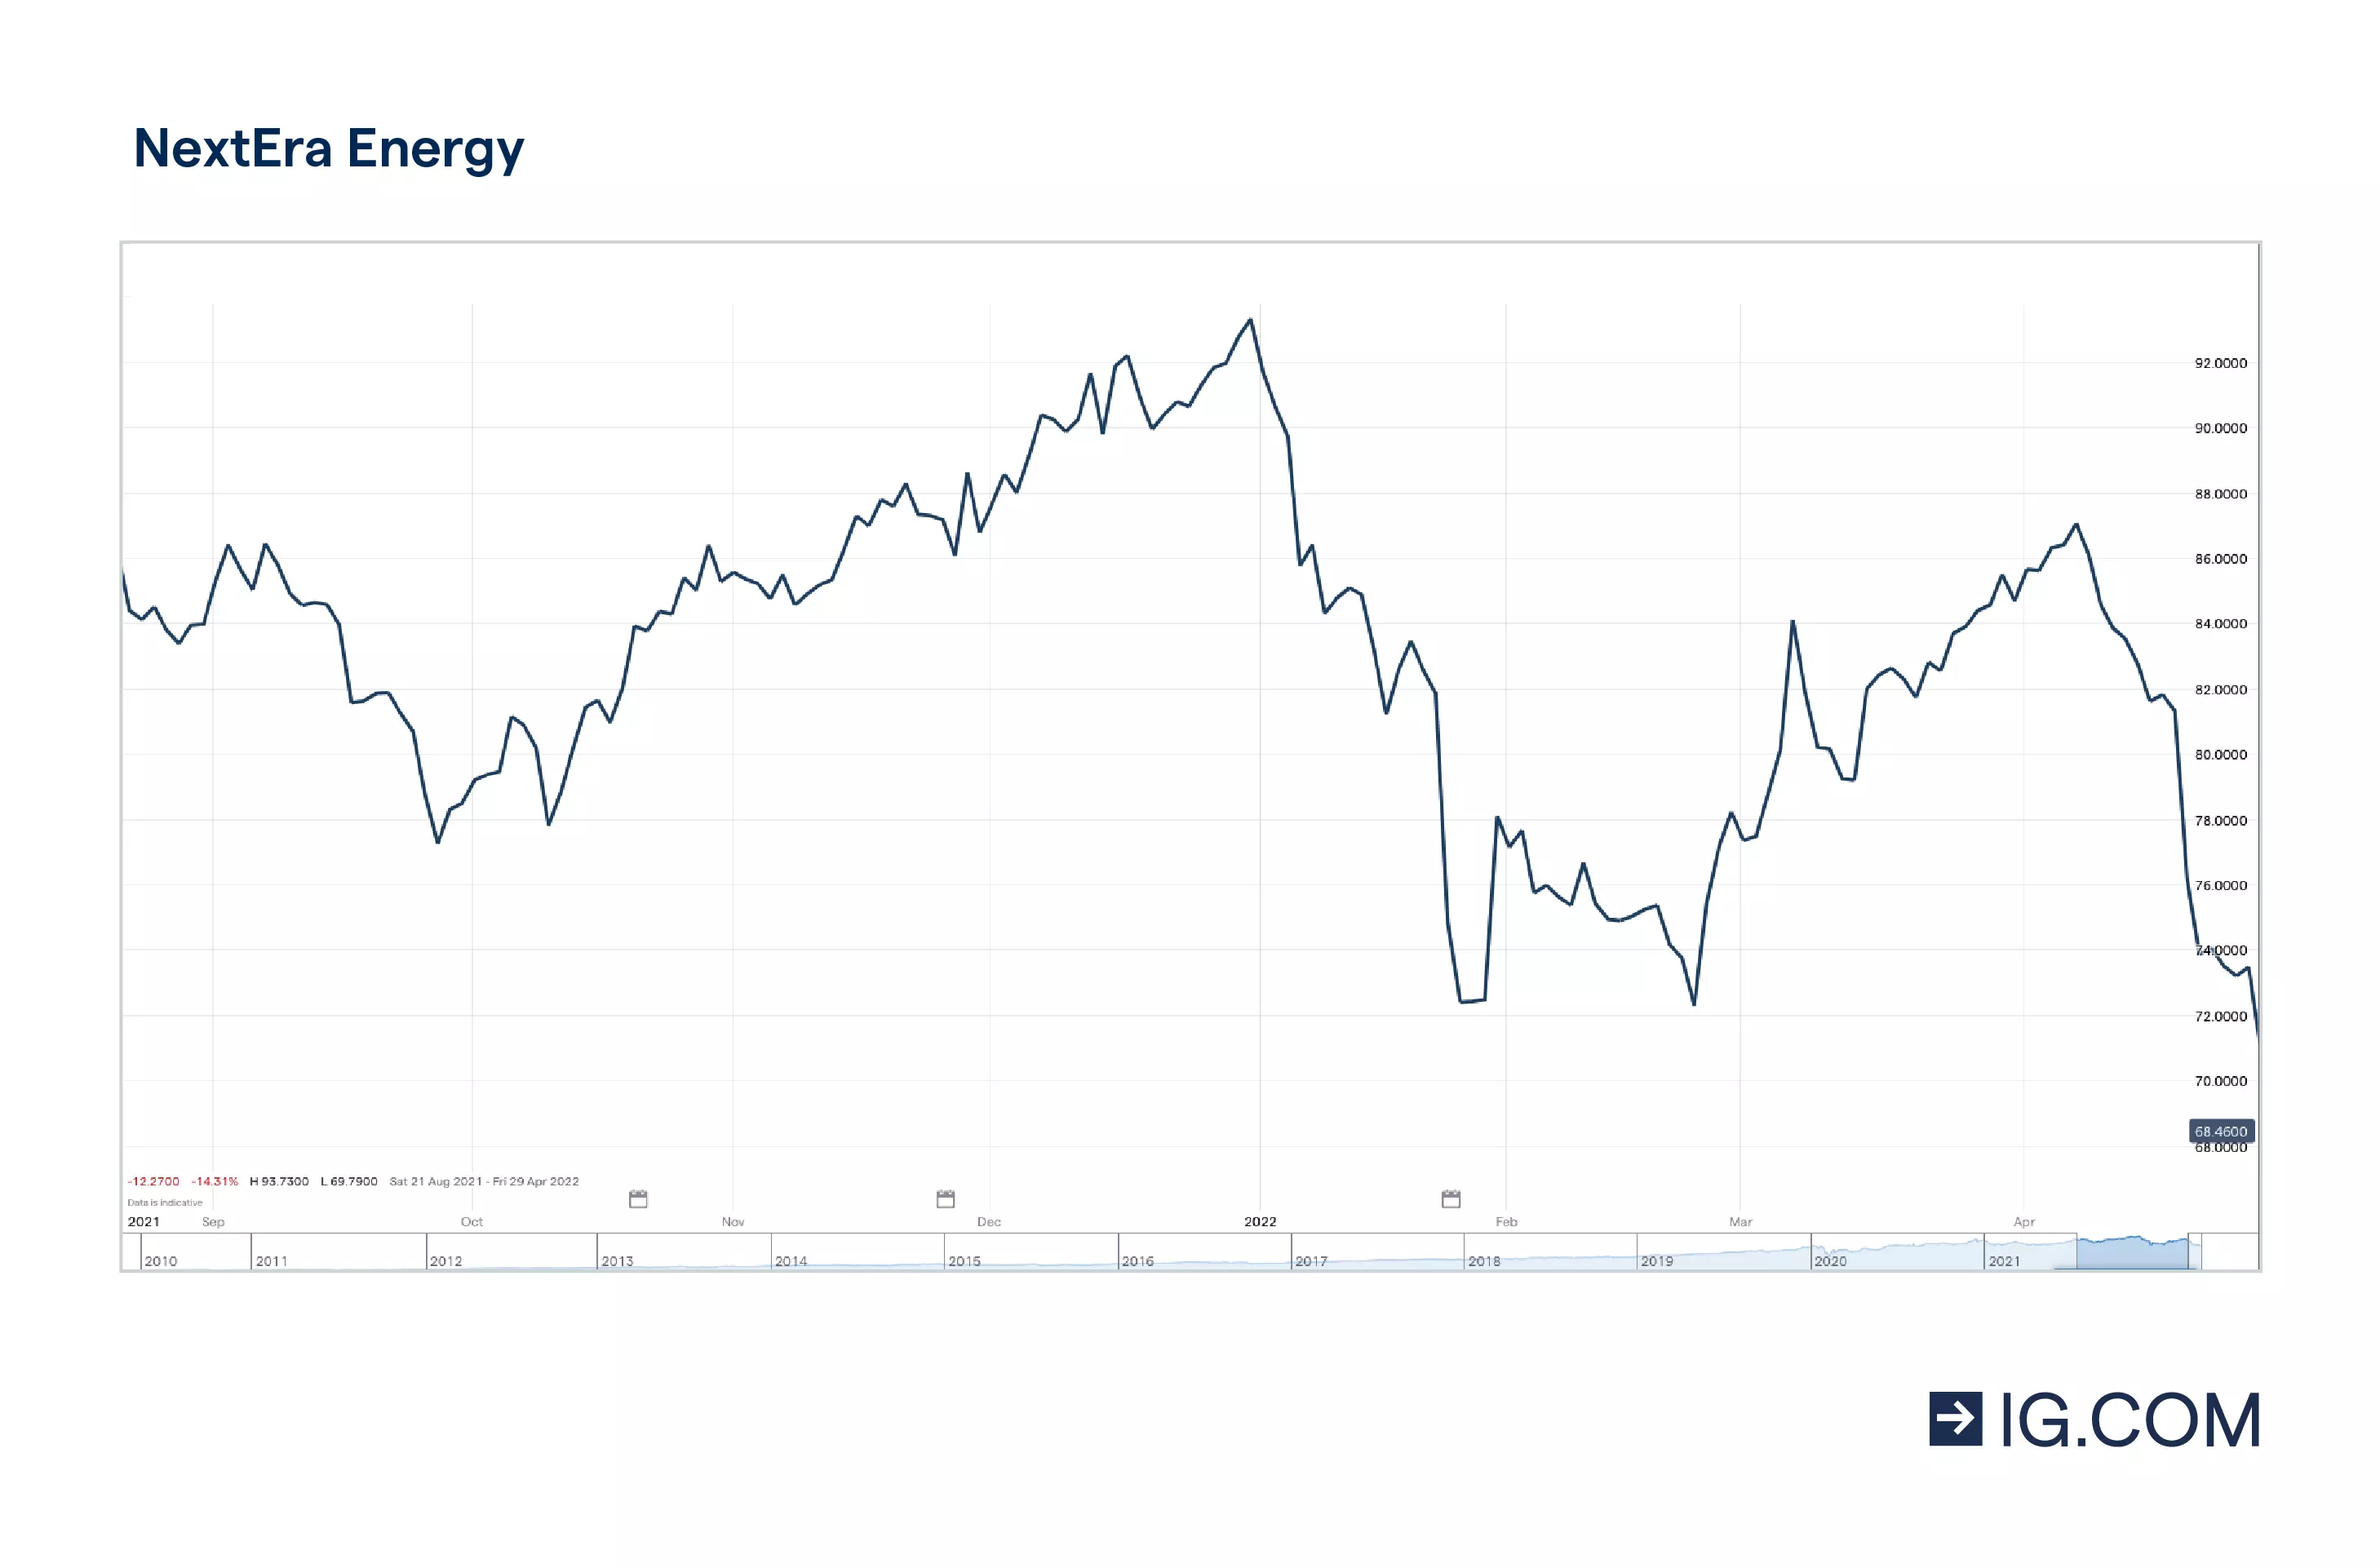 Il grafico mostra il titolo NextEra Energy su un orizzonte temporale di un anno, in cui la quotazione ha toccato vari livelli, con un picco di 93,73 $ nel gennaio del 2022, prima di subire un calo, e 87,06 $ nell'aprile del 2022